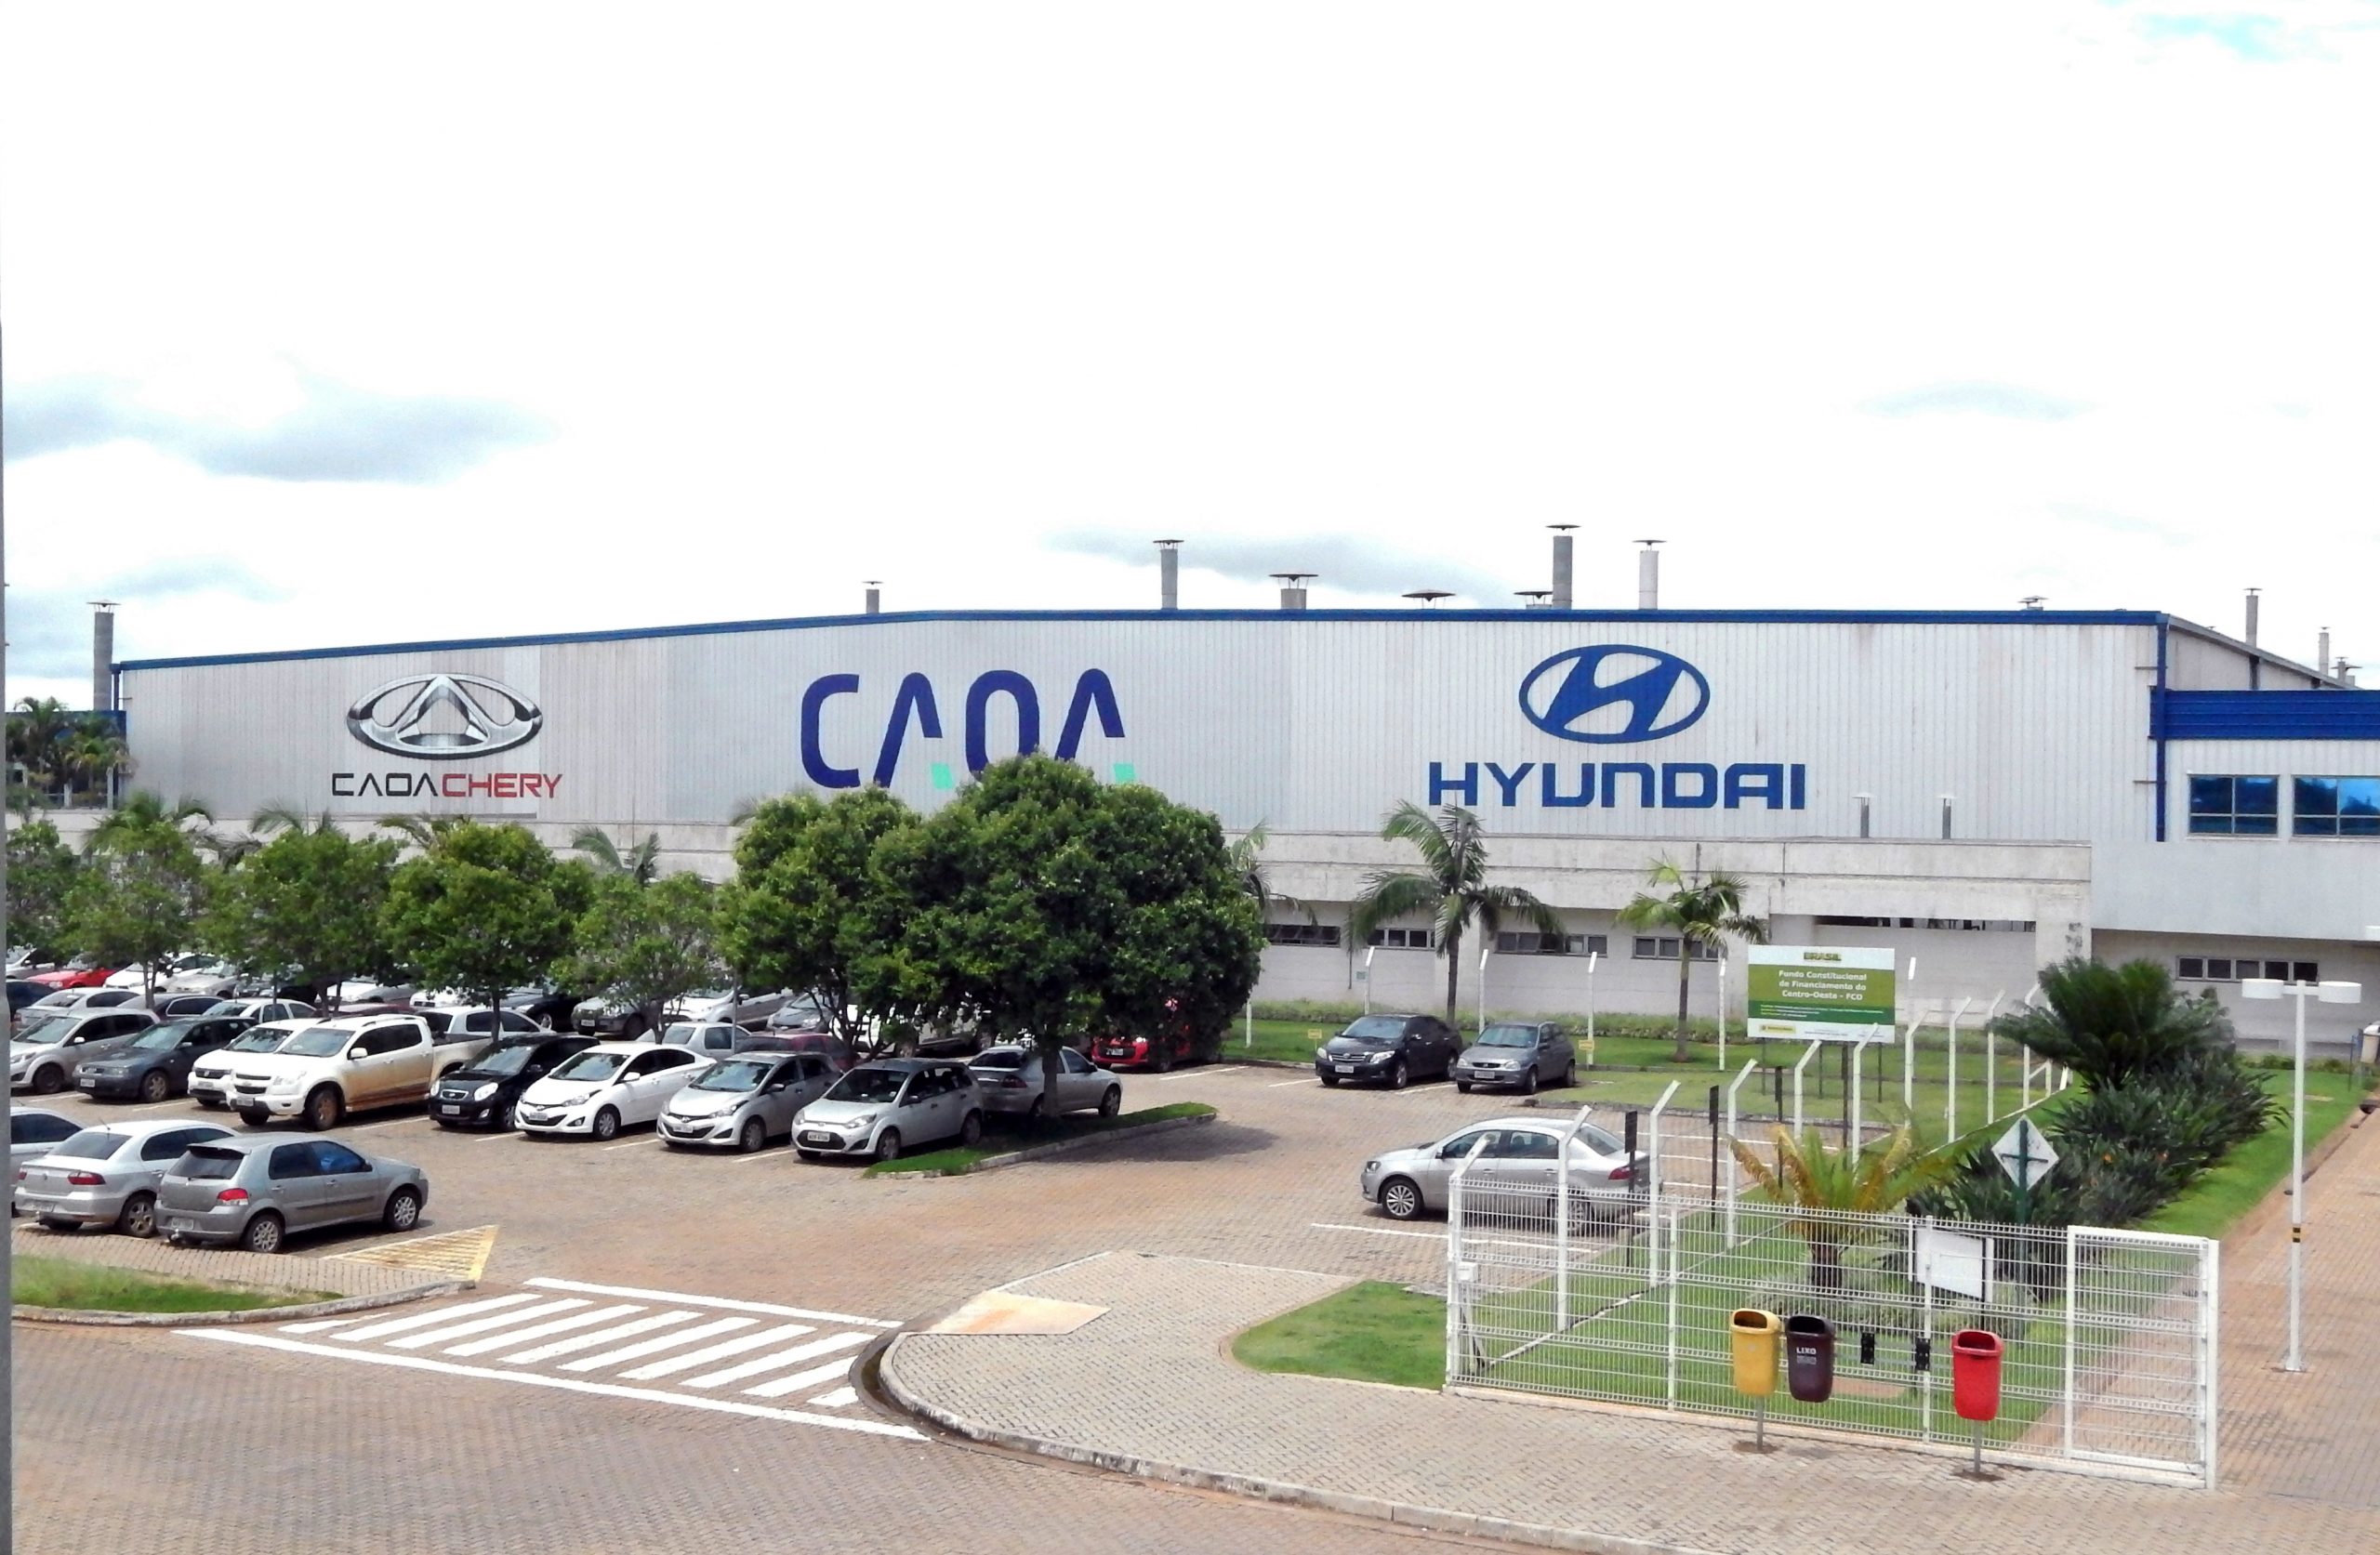 CAOA realiza mais de 385 contratações e abre segundo turno de trabalhos em Anápolis (GO) / Divulgação